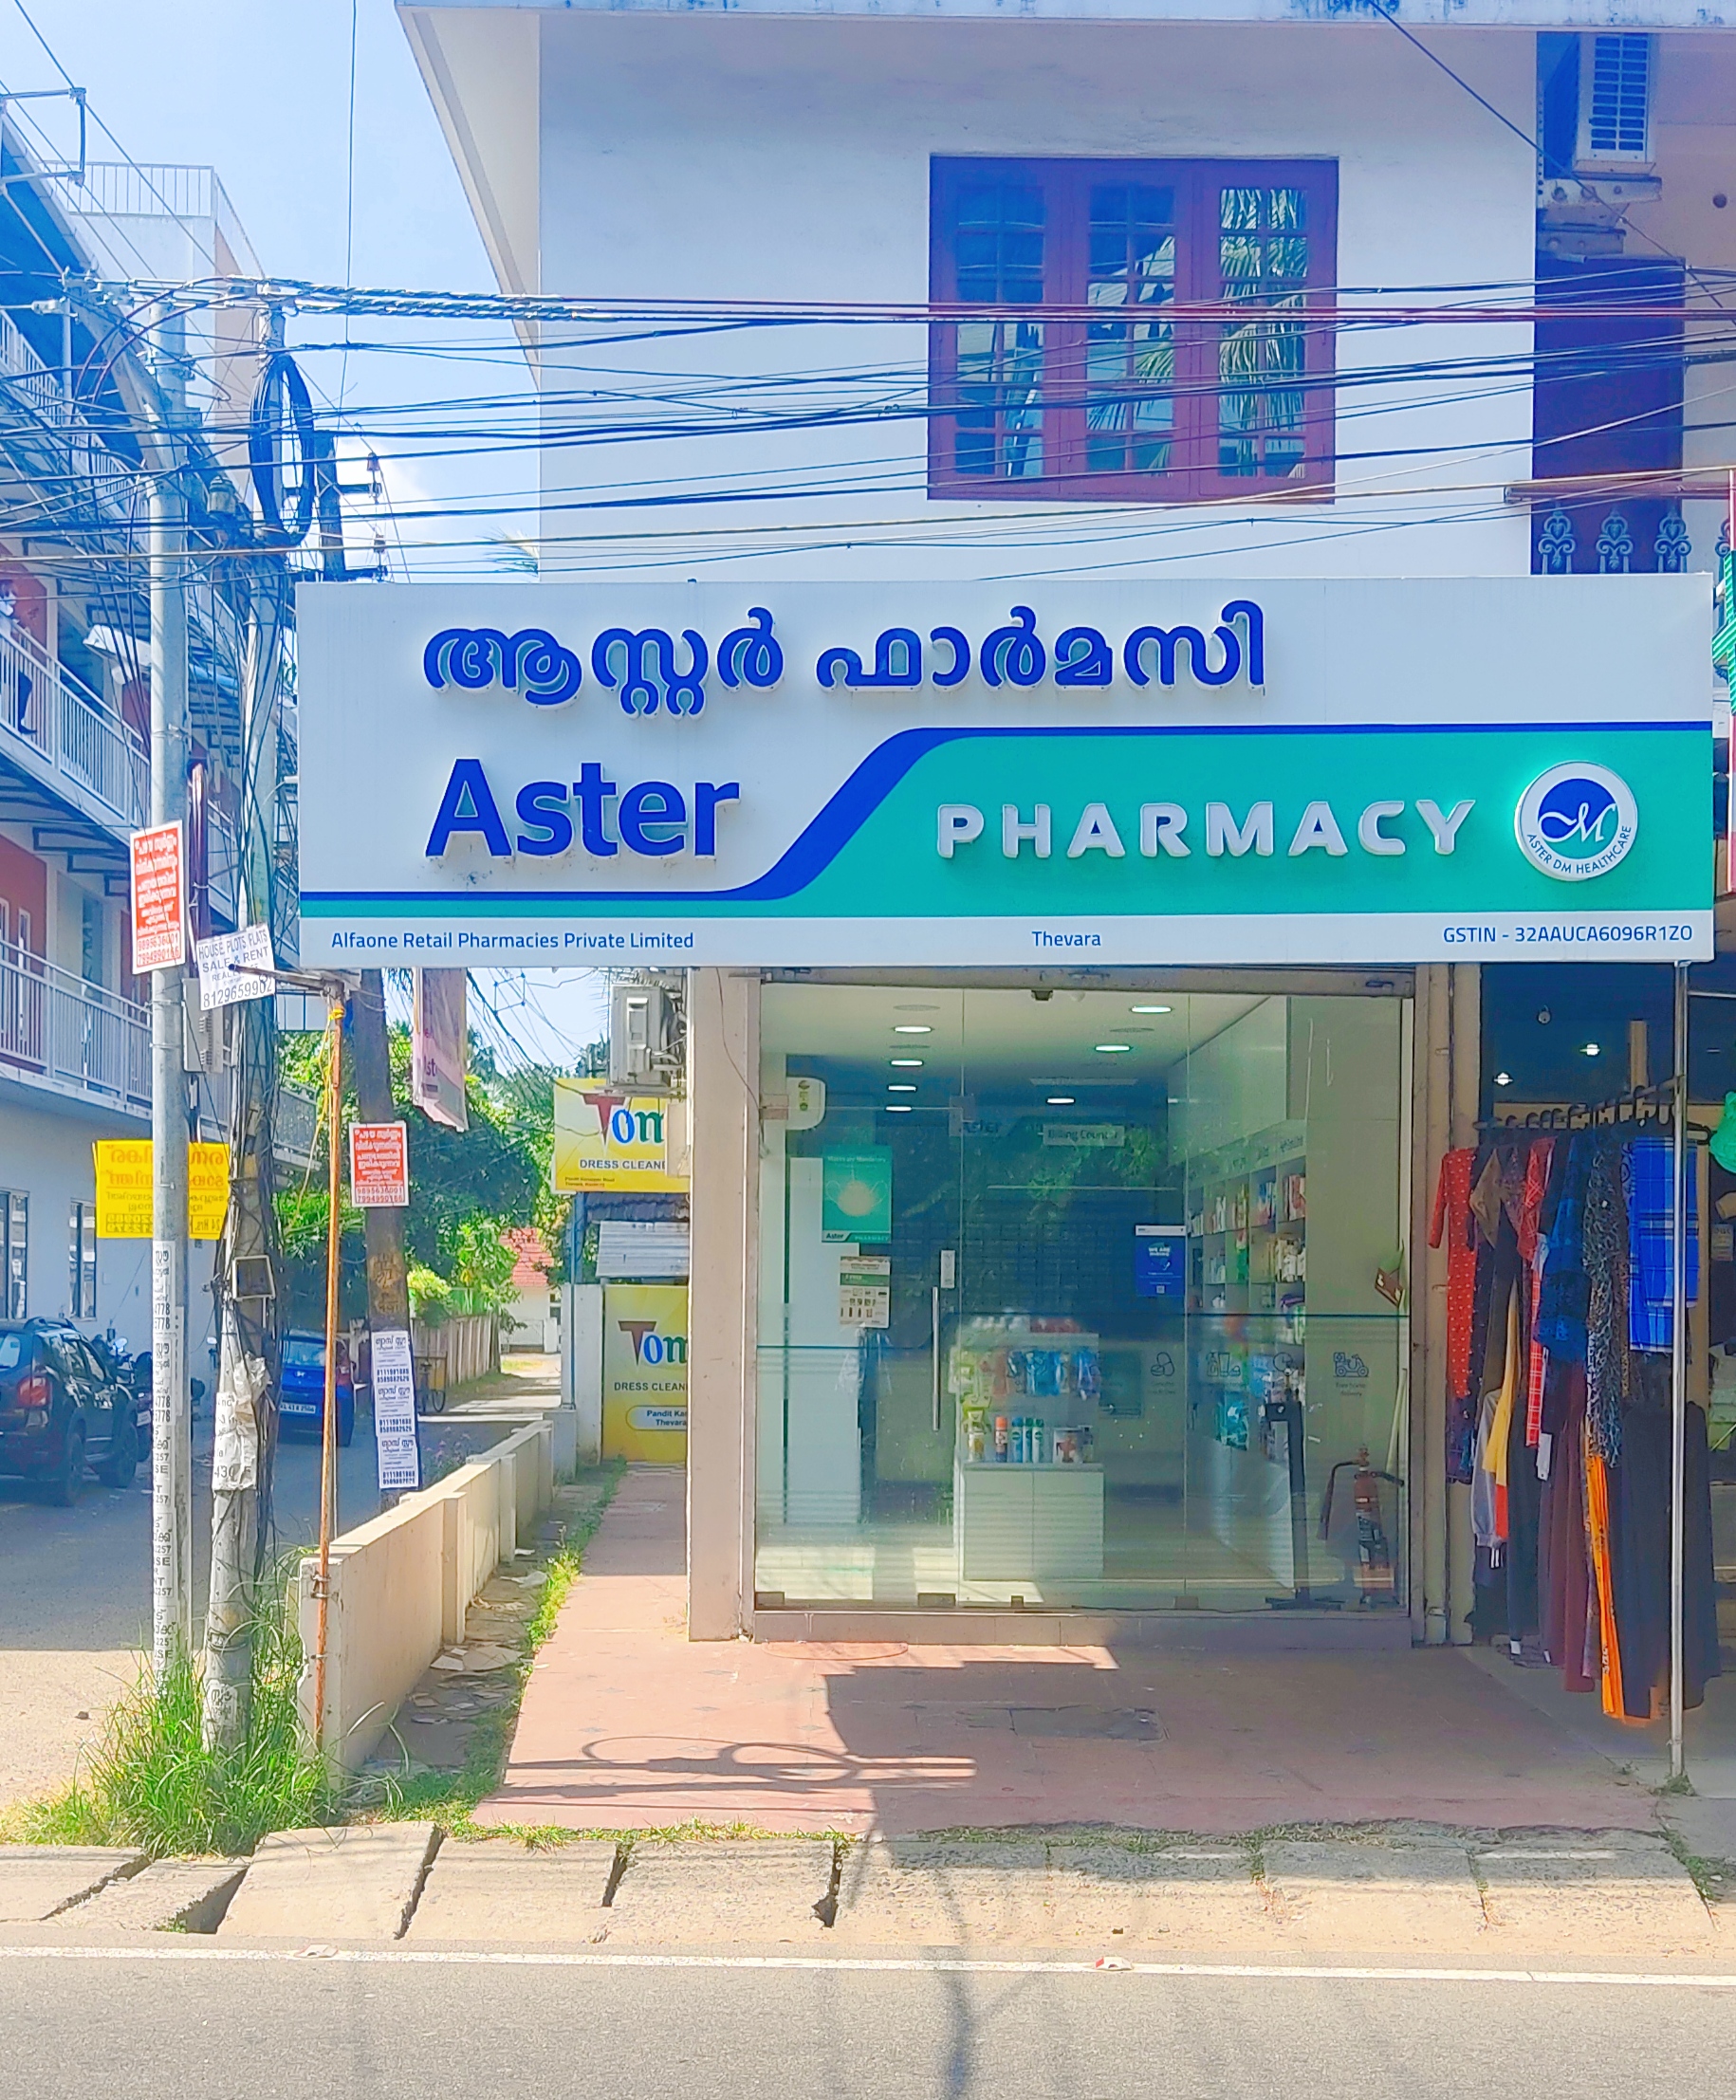 Aster Pharmacy in Thevara, Kochi